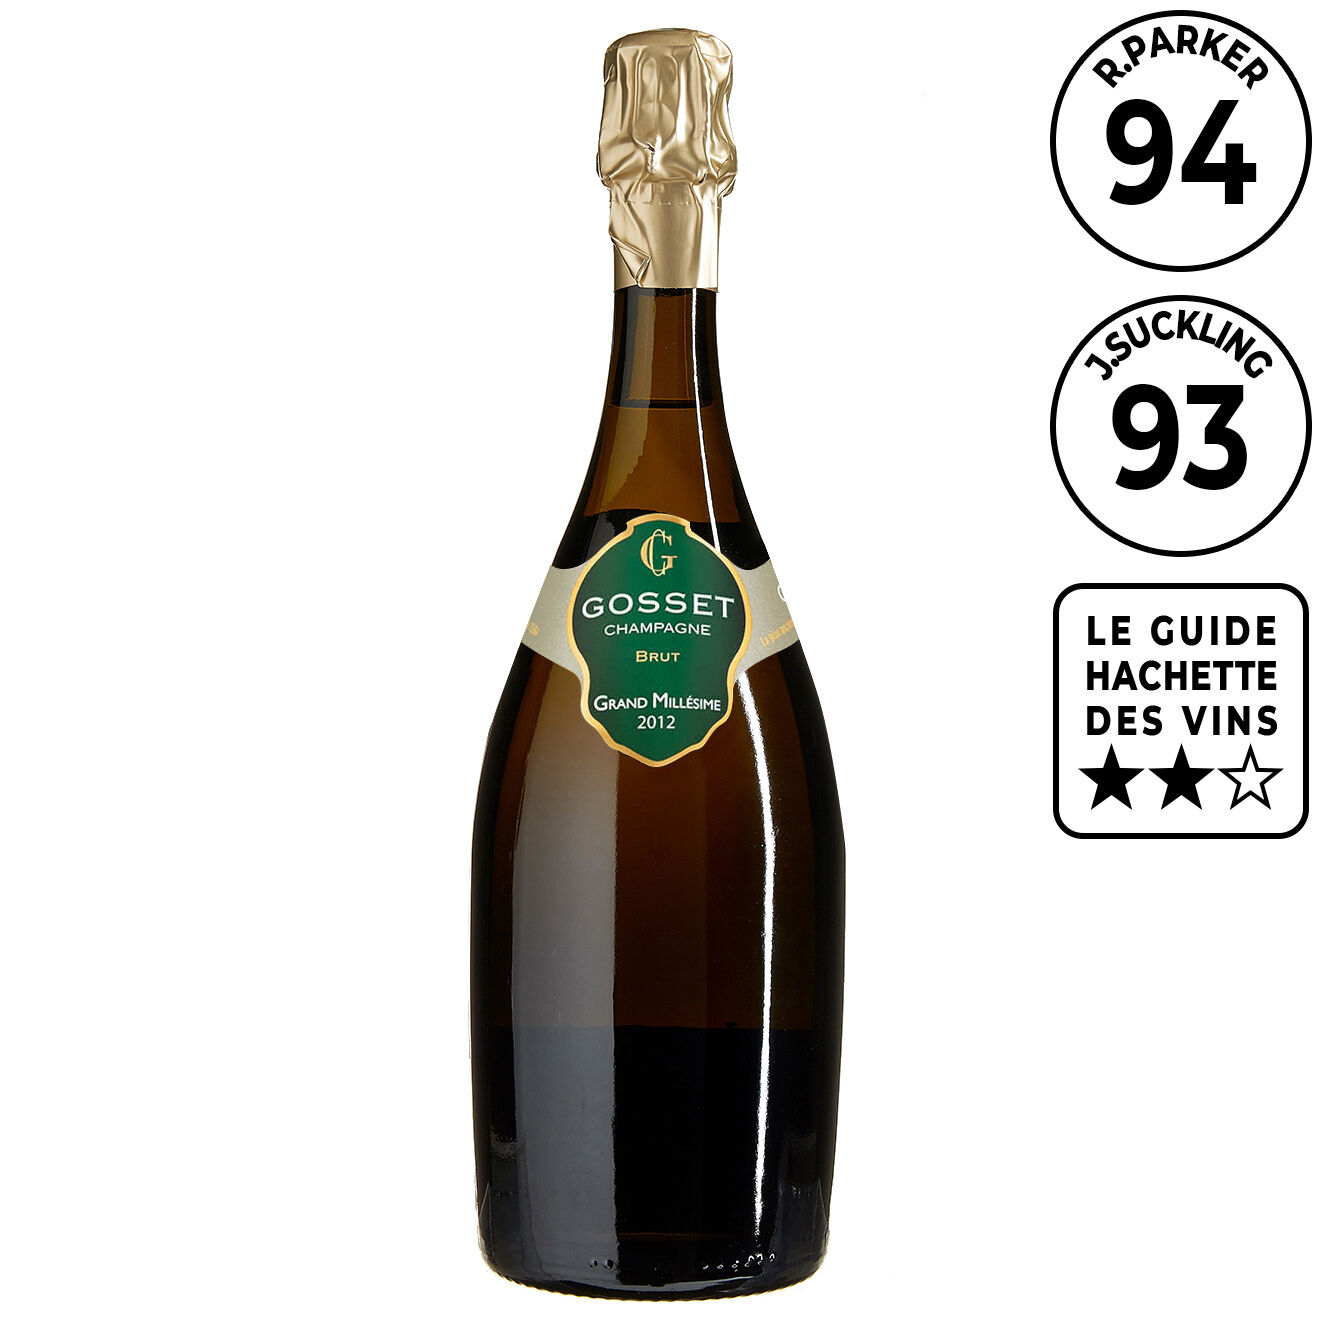 1 Champagne Grand Millésime Brut 2012 Gosset 75cl